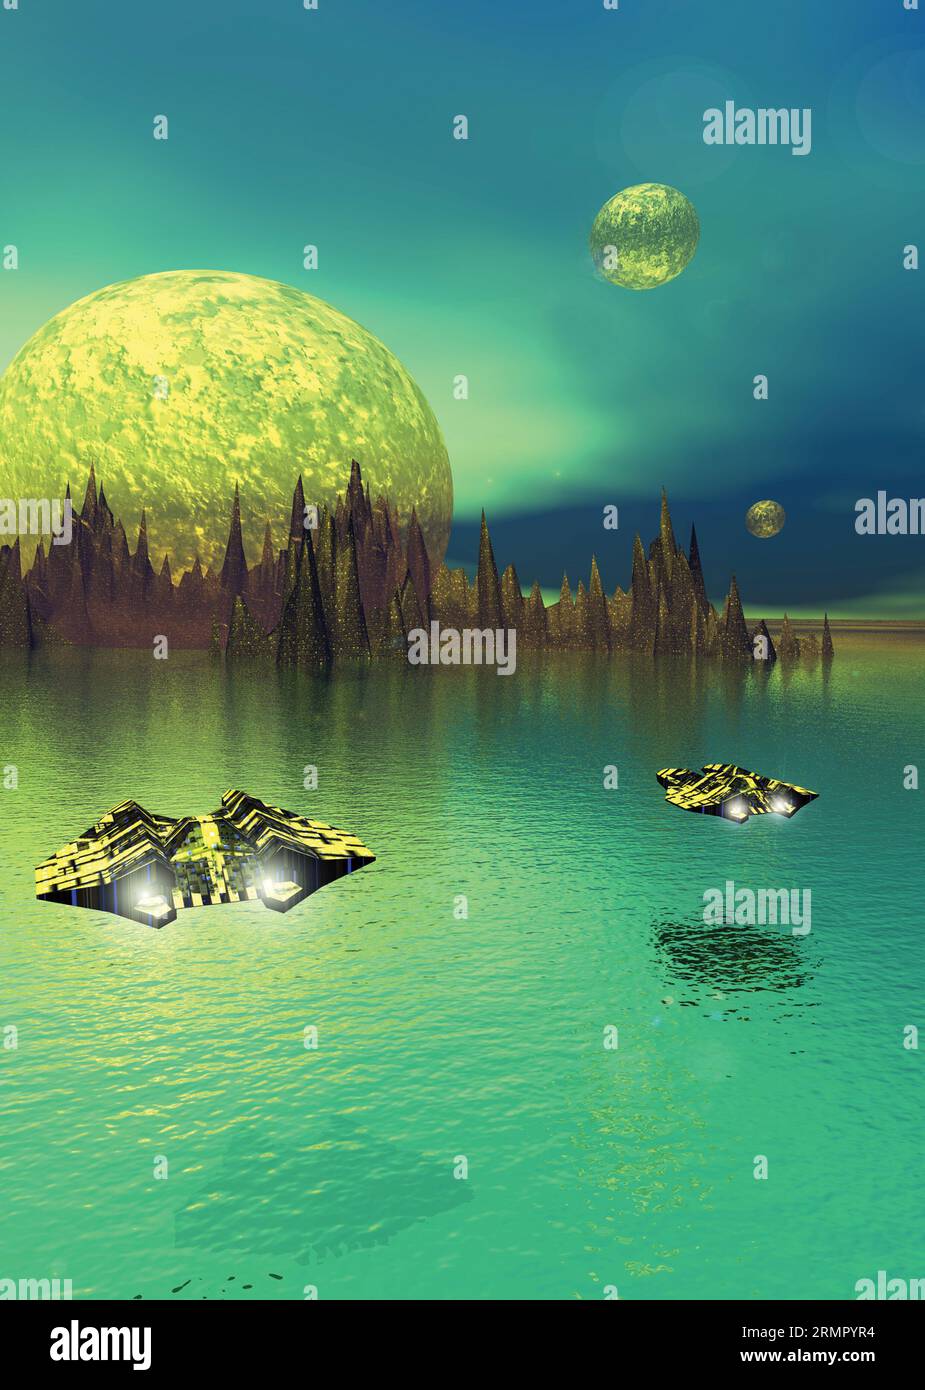 pianeta alieno con astronavi che volano sull'acqua Foto Stock